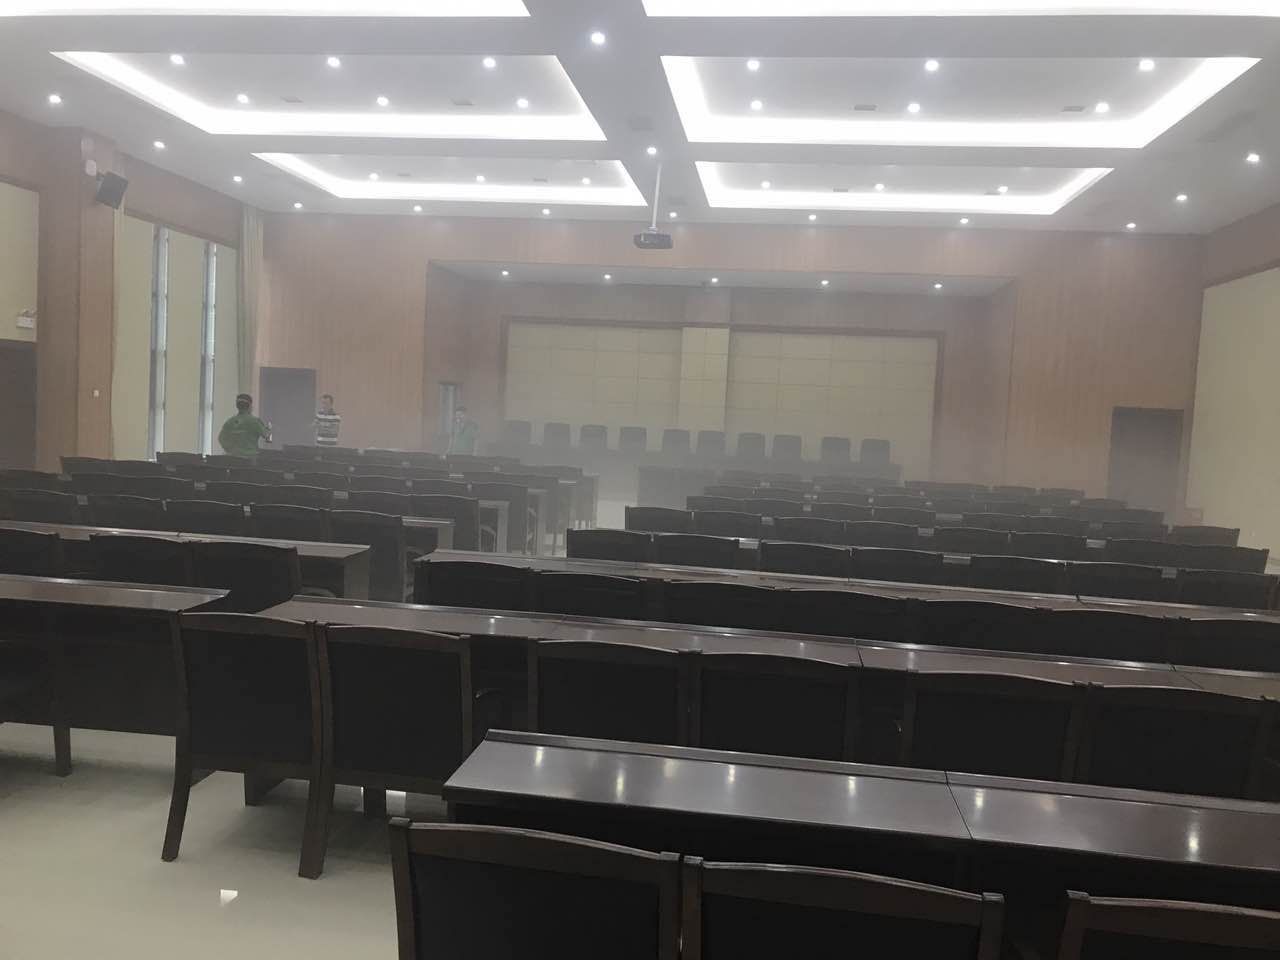 2017年6月20号，江西龙南县行政中心室内空气治理工程优吸成为中标单位